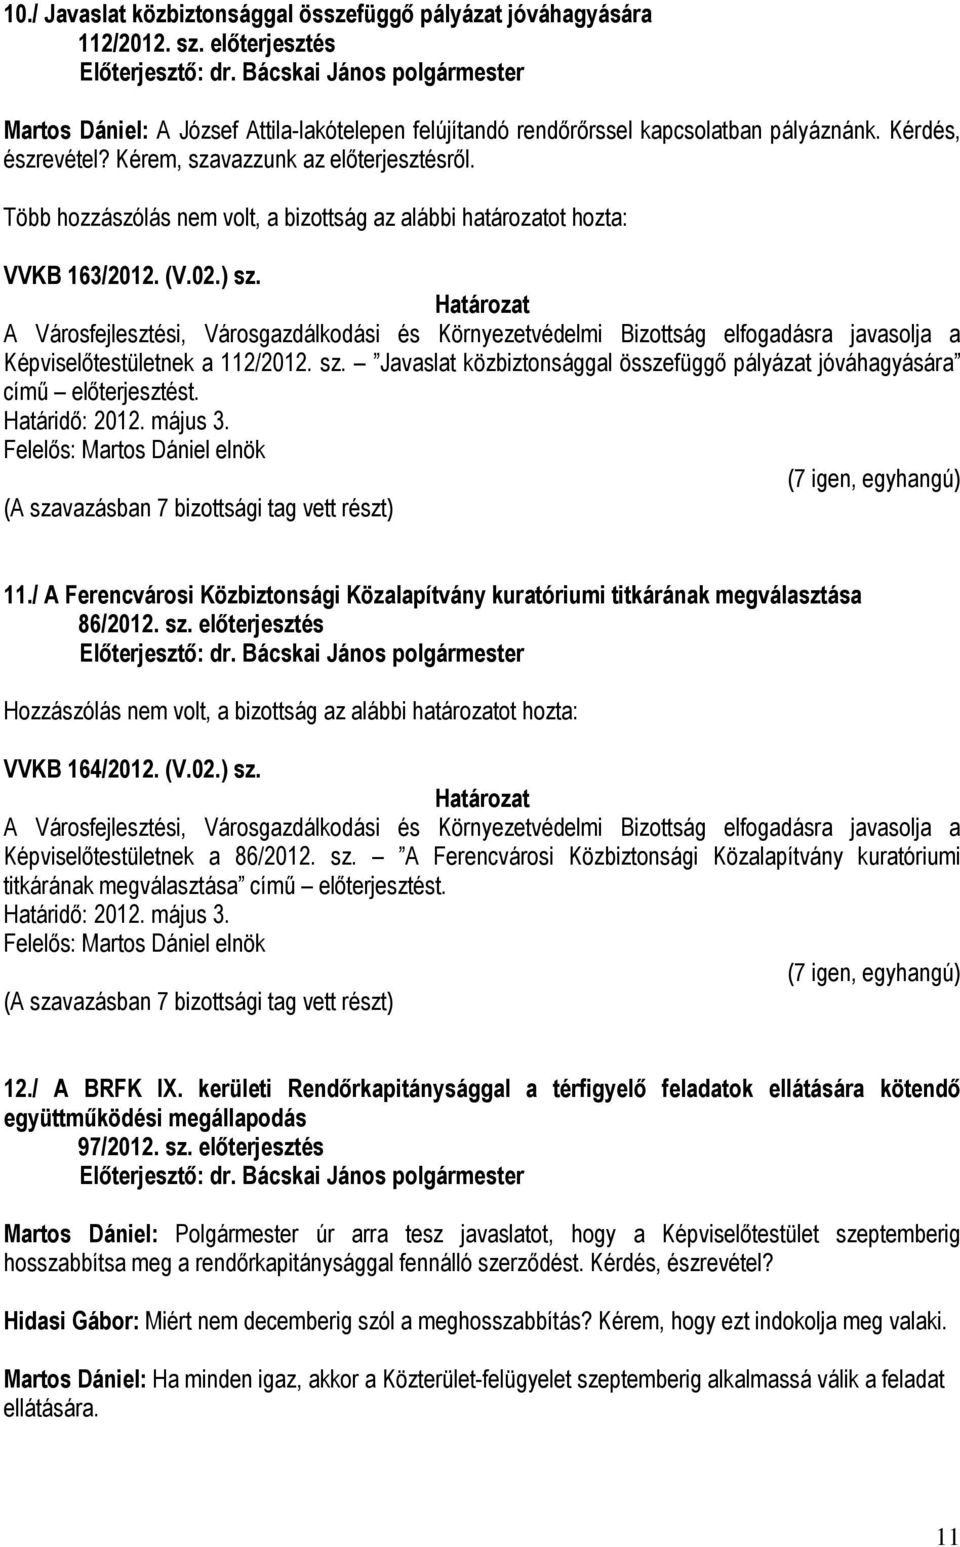 11./ A Ferencvárosi Közbiztonsági Közalapítvány kuratóriumi titkárának megválasztása 86/2012. sz. előterjesztés Hozzászólás nem volt, a bizottság az alábbi határozatot hozta: VVKB 164/2012. (V.02.